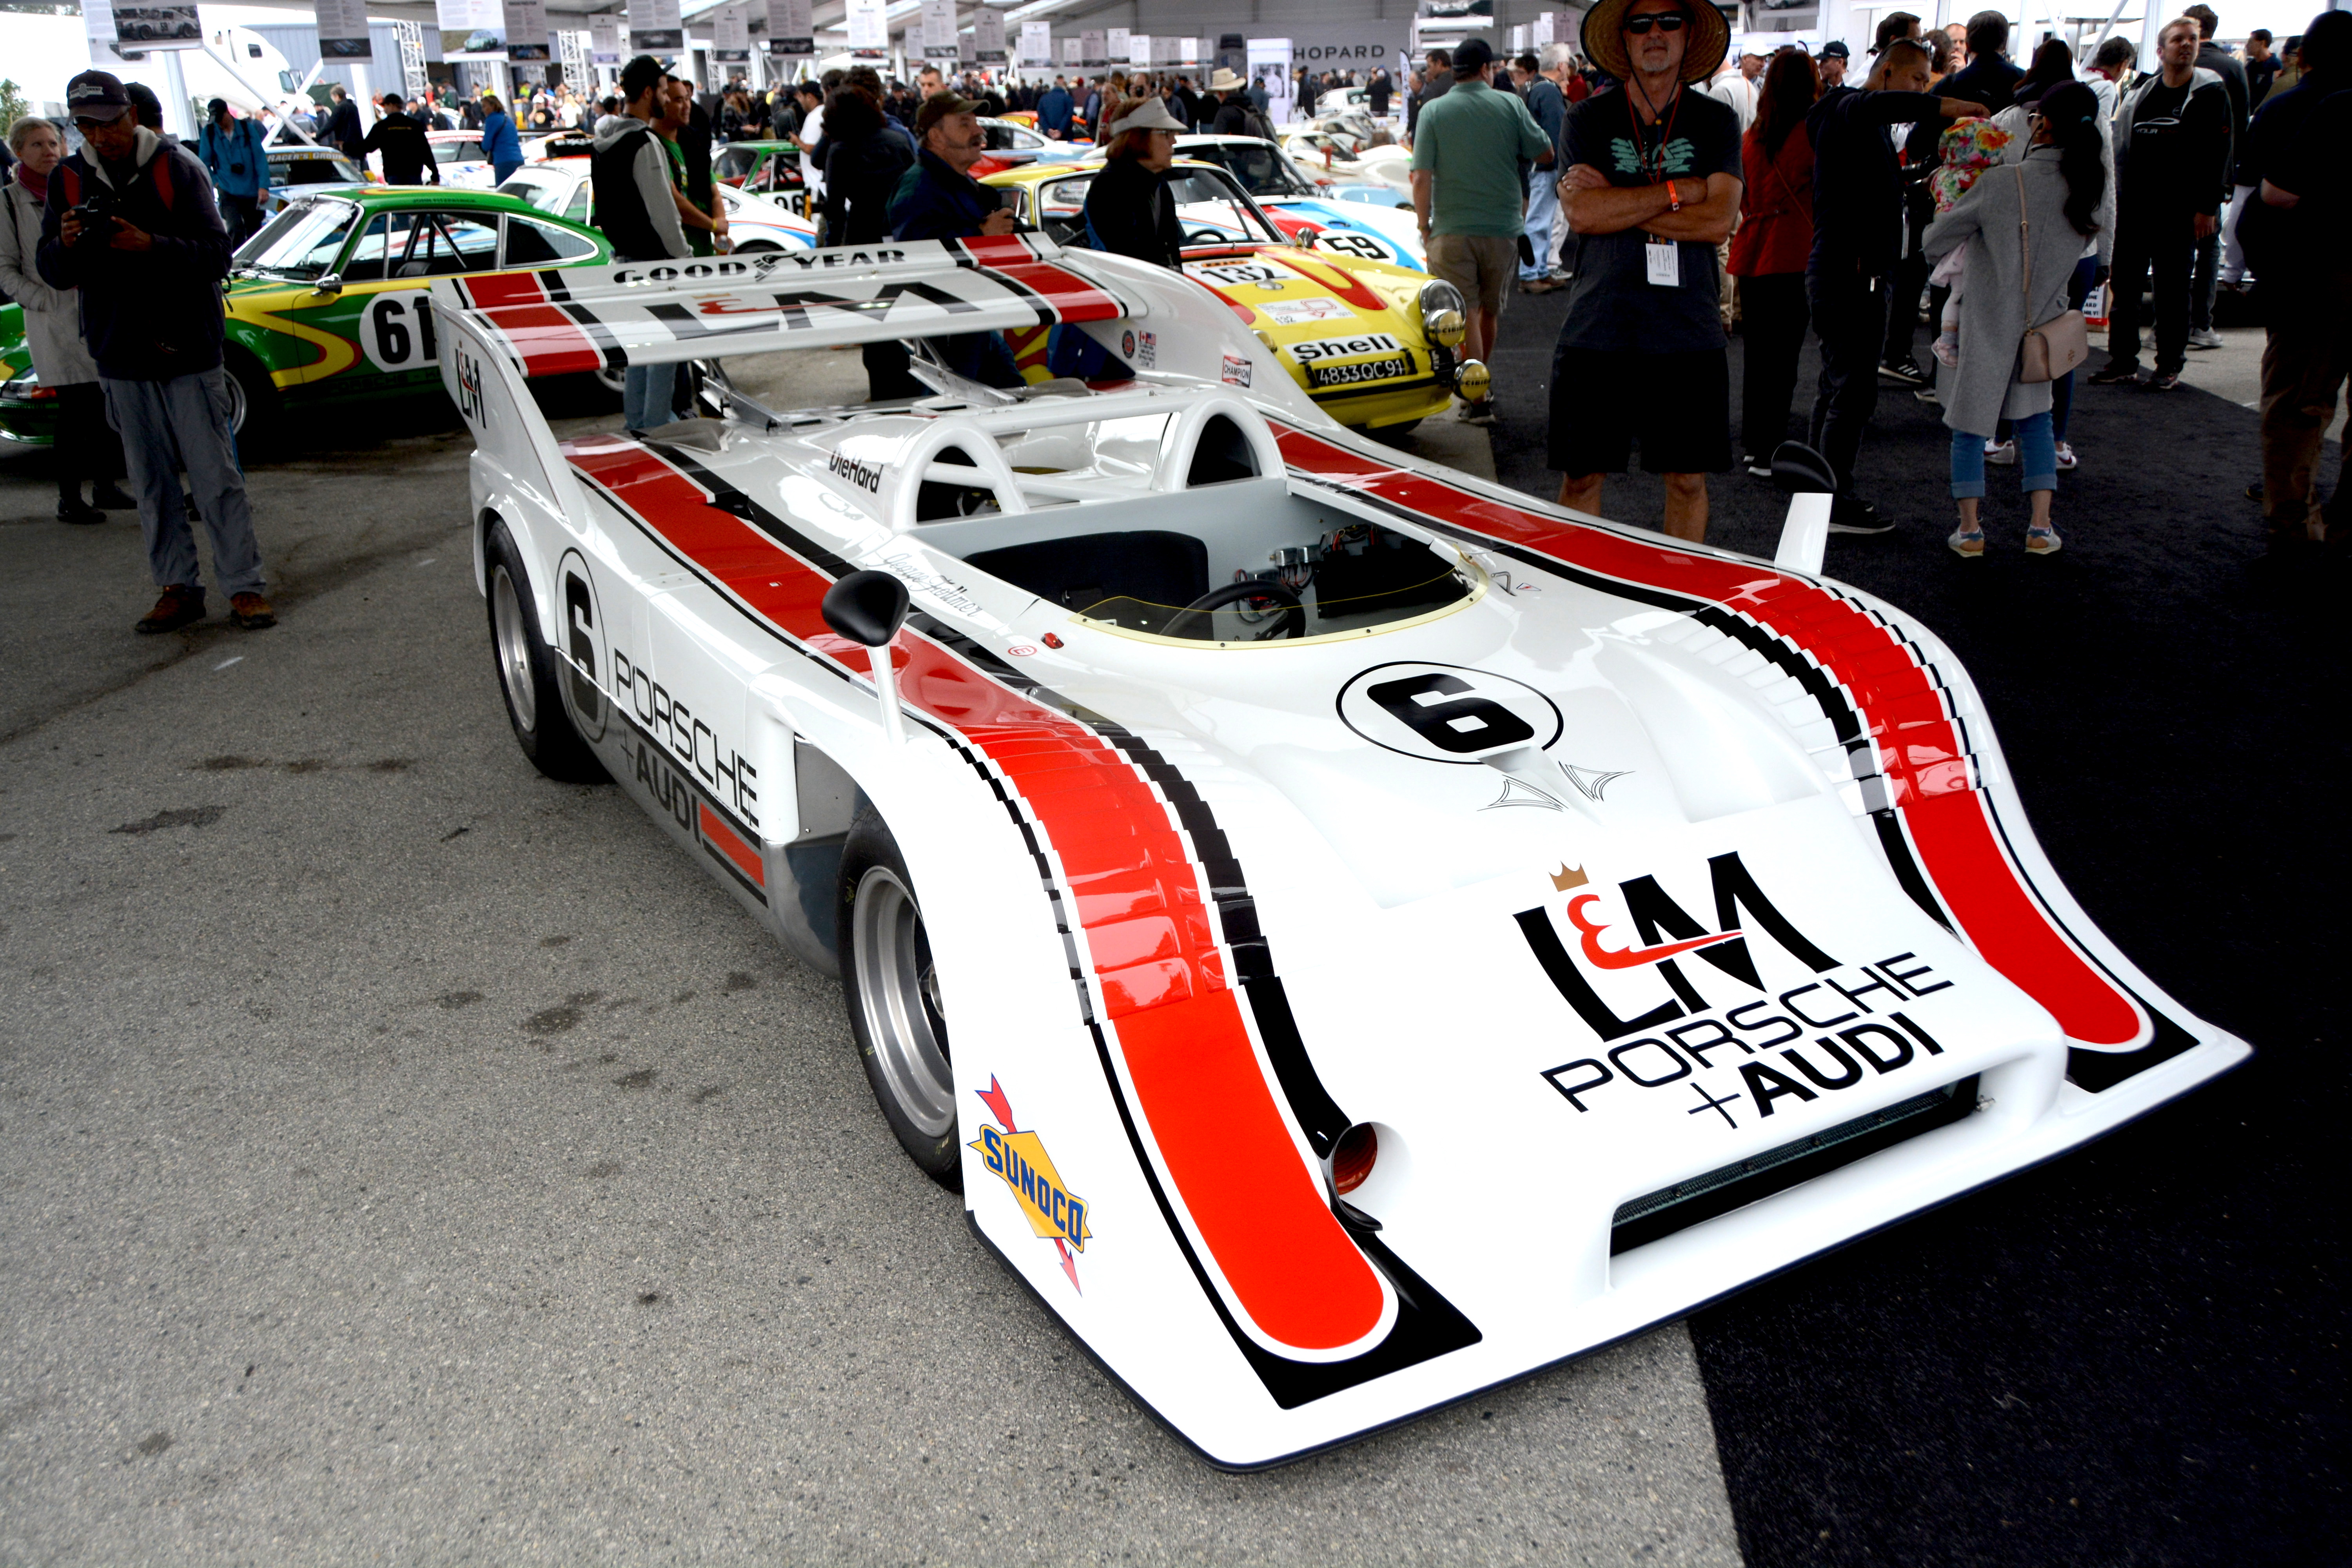 Porsche 917 Le Mans, Porsche 917: Maiden Le Mans win 50 years ago, ClassicCars.com Journal